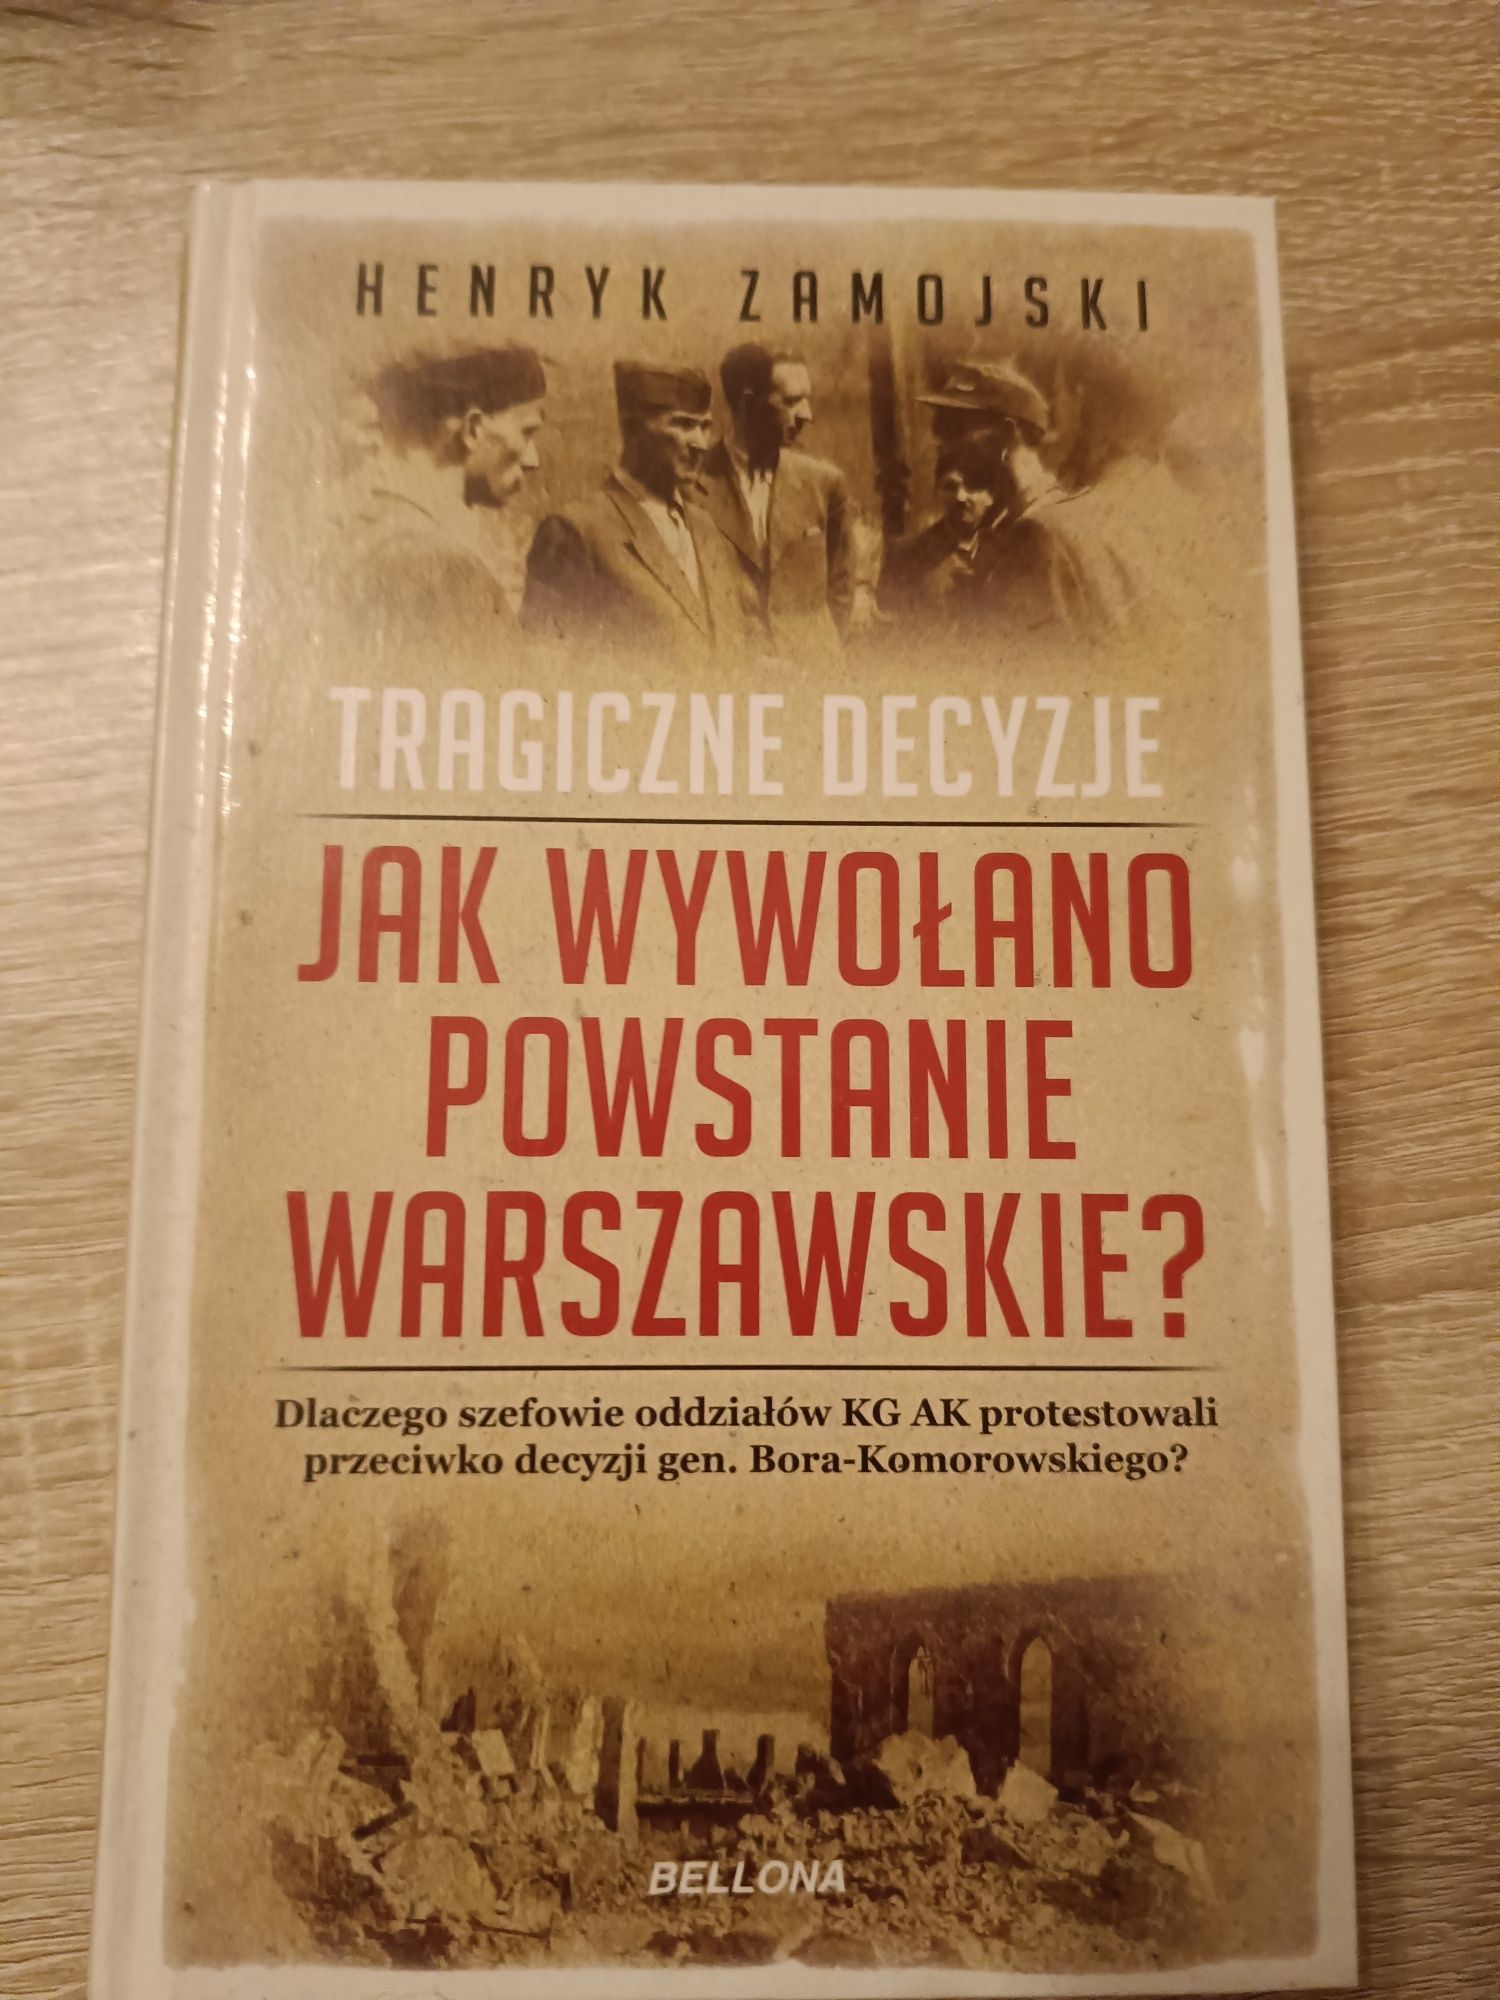 Henryk Zamojski - jak wywołano powstanie Warszawskie